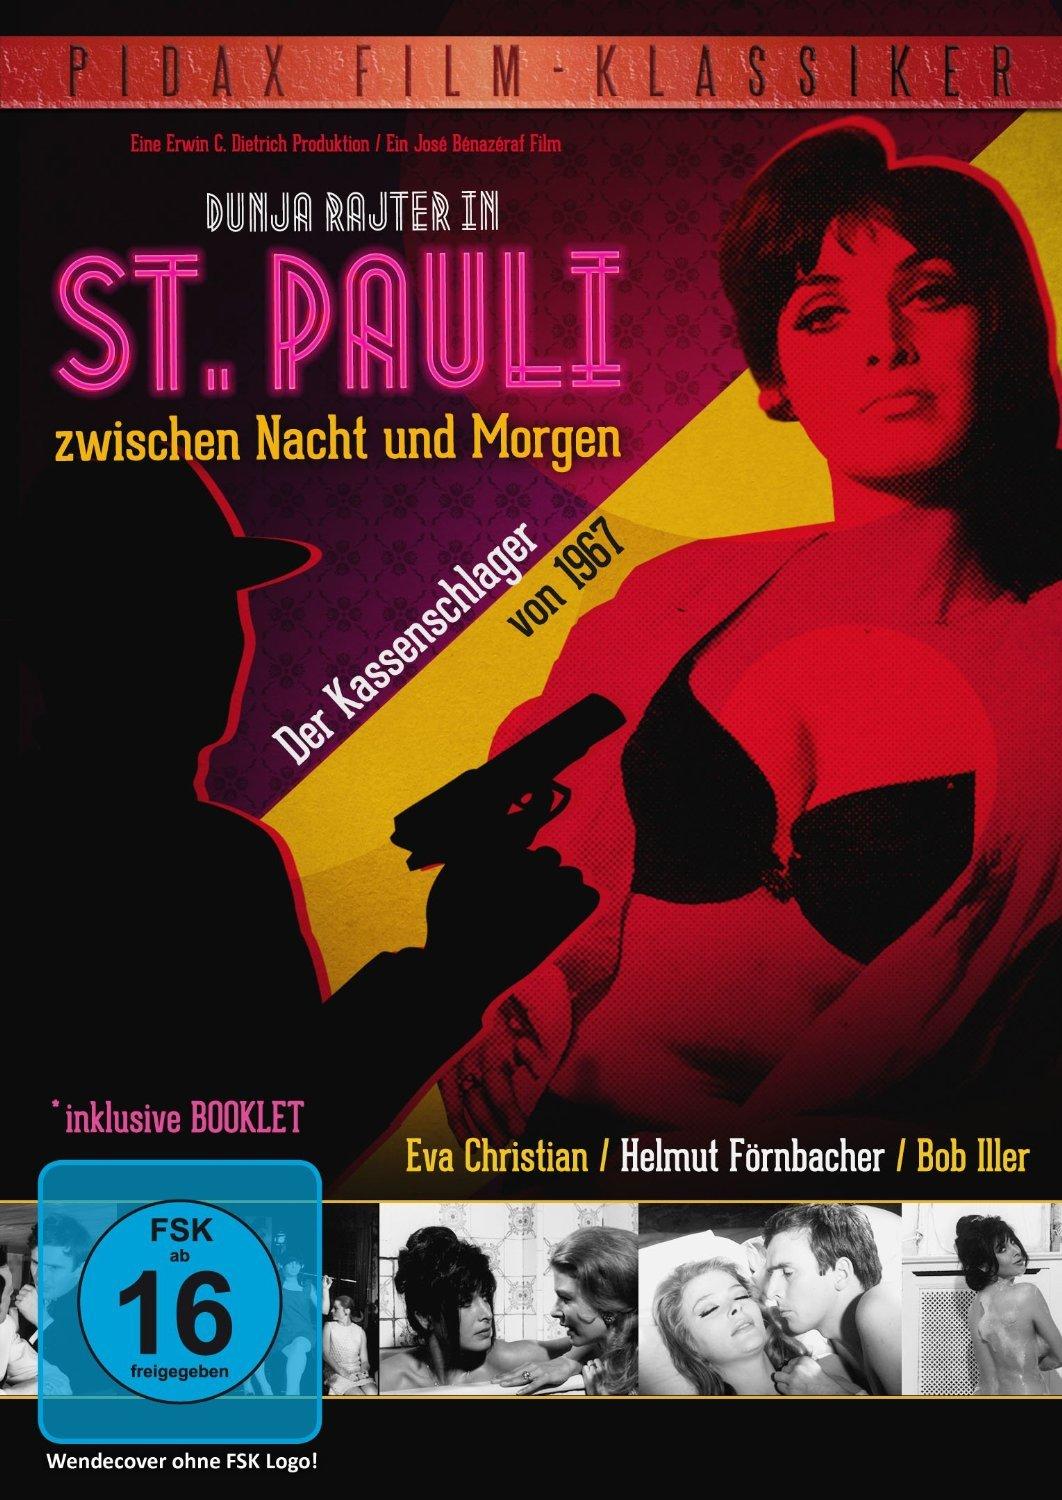 St. Pauli zwischen Nacht und Morgen (1967) with English Subtitles on DVD on DVD